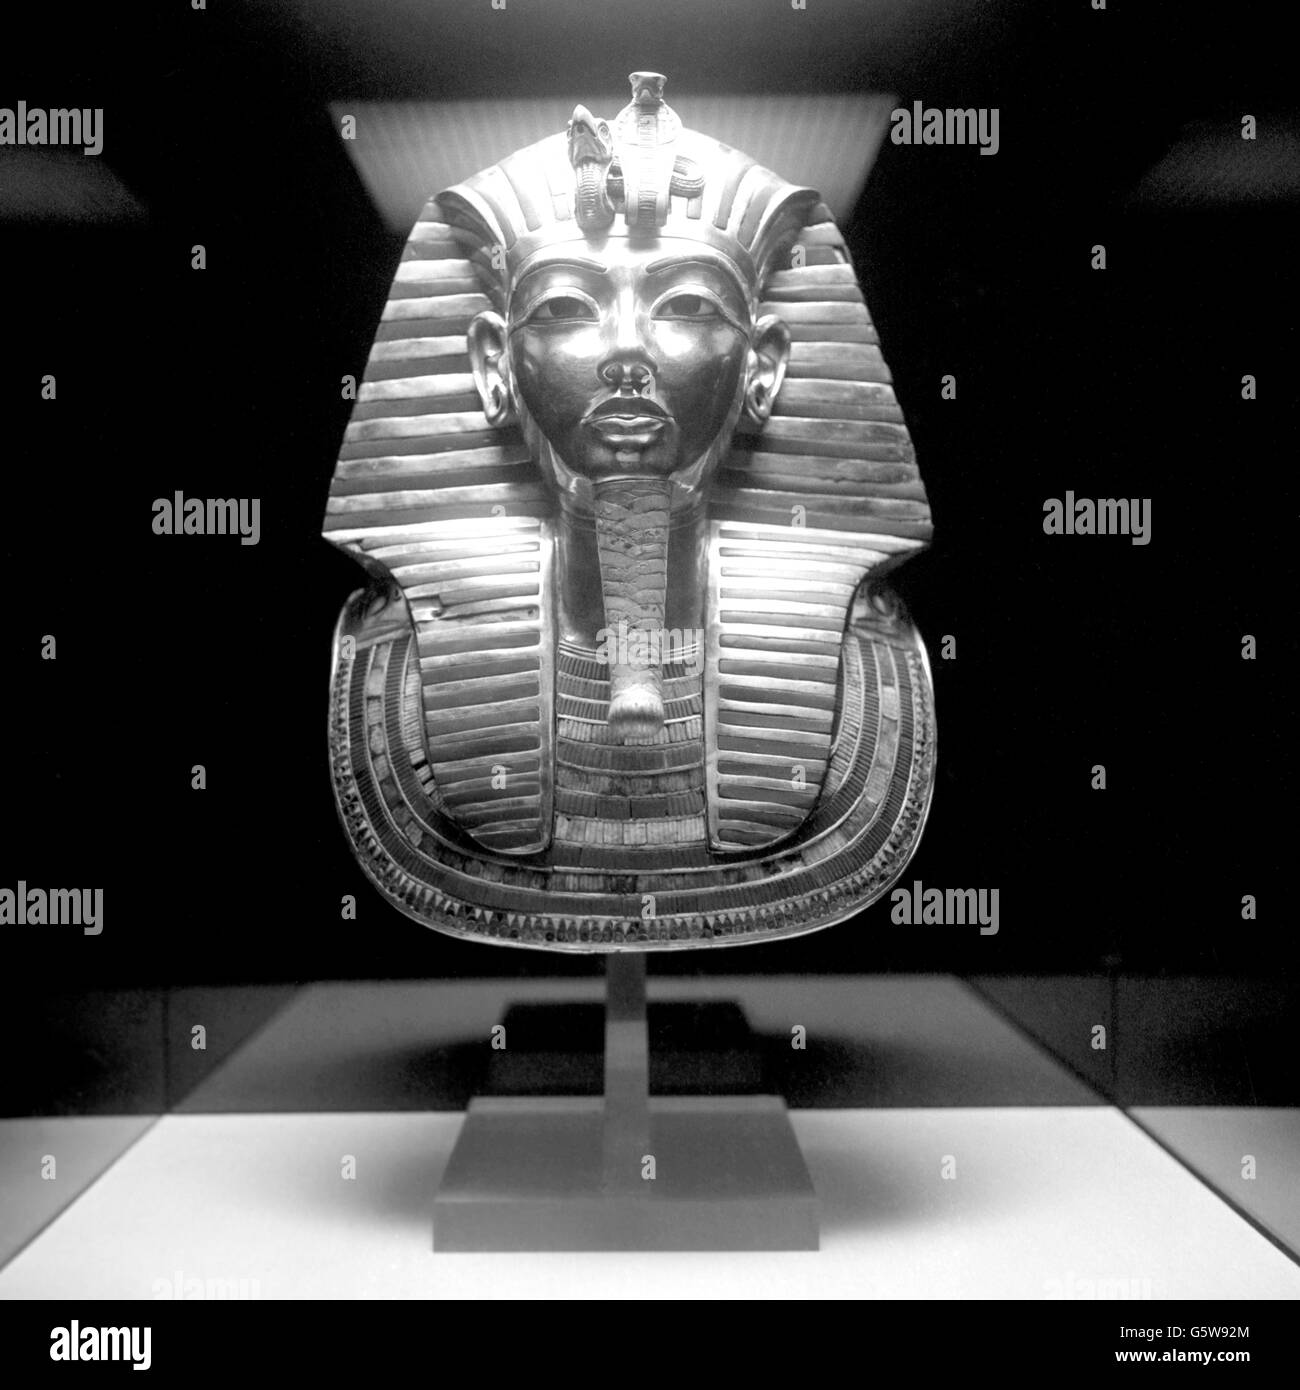 History - Tutankhamun Exhibition - British Museum, London. Death mask of the Pharaoh Tutankhamun. Stock Photo